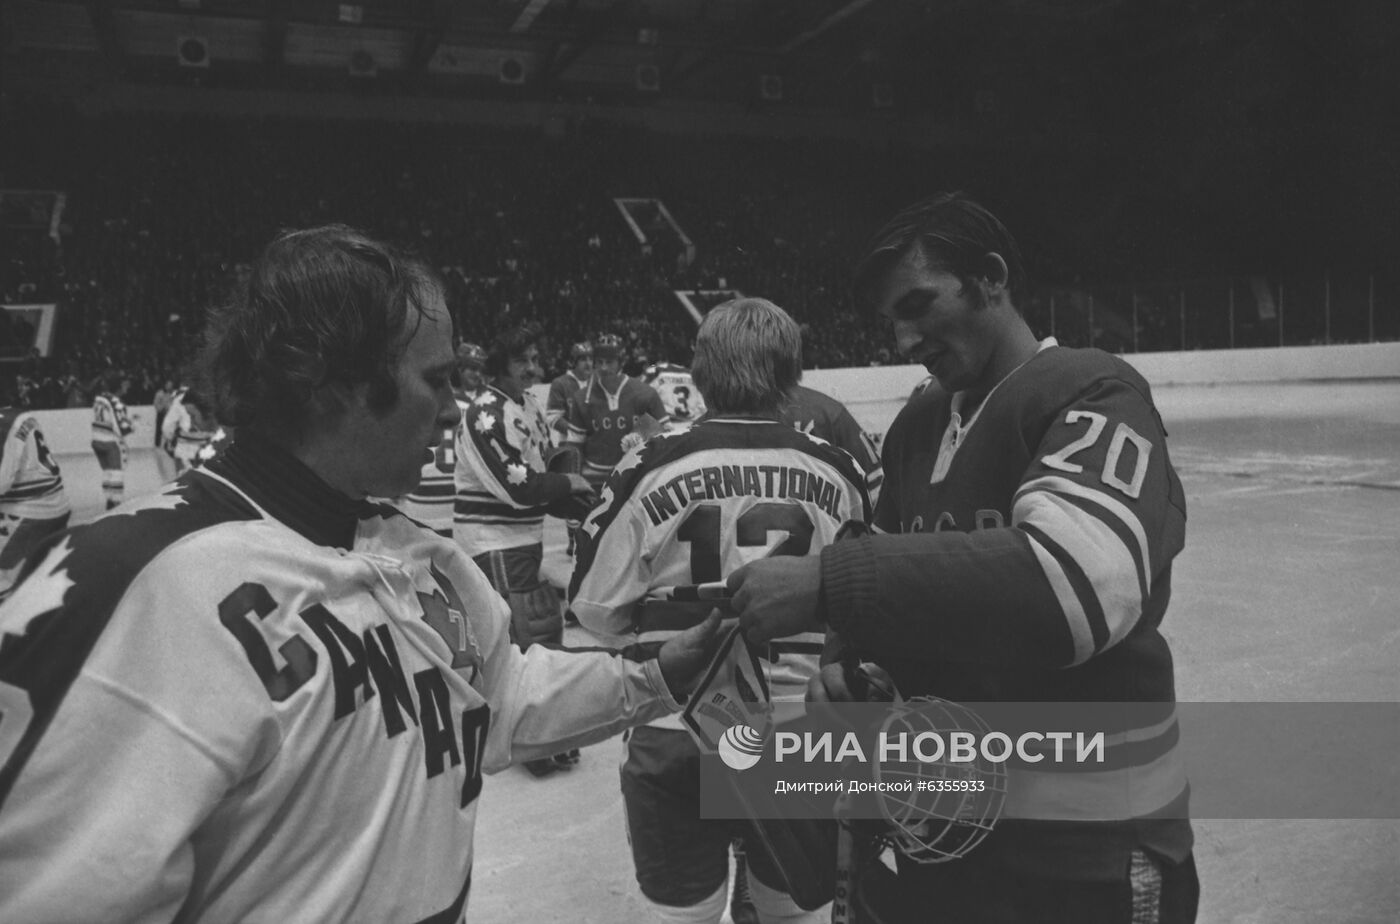 Хоккейная суперсерия игр между сборными СССР и Канады в 1974 году